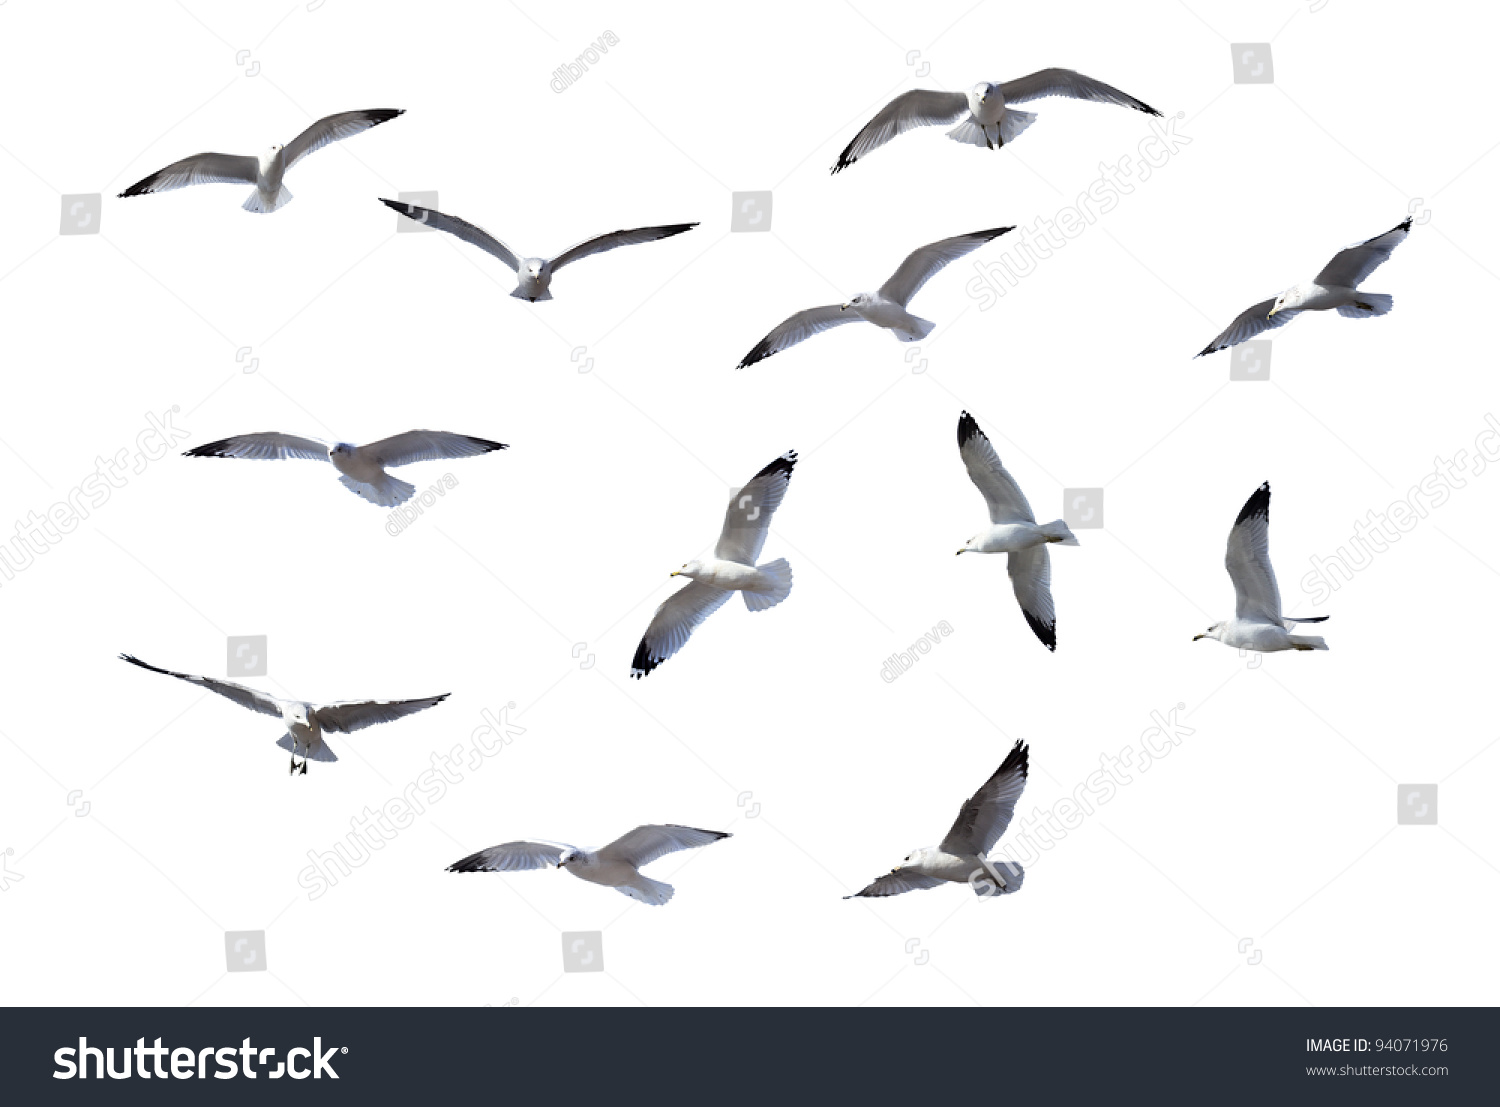 Flying Gulls isolated on white background #94071976